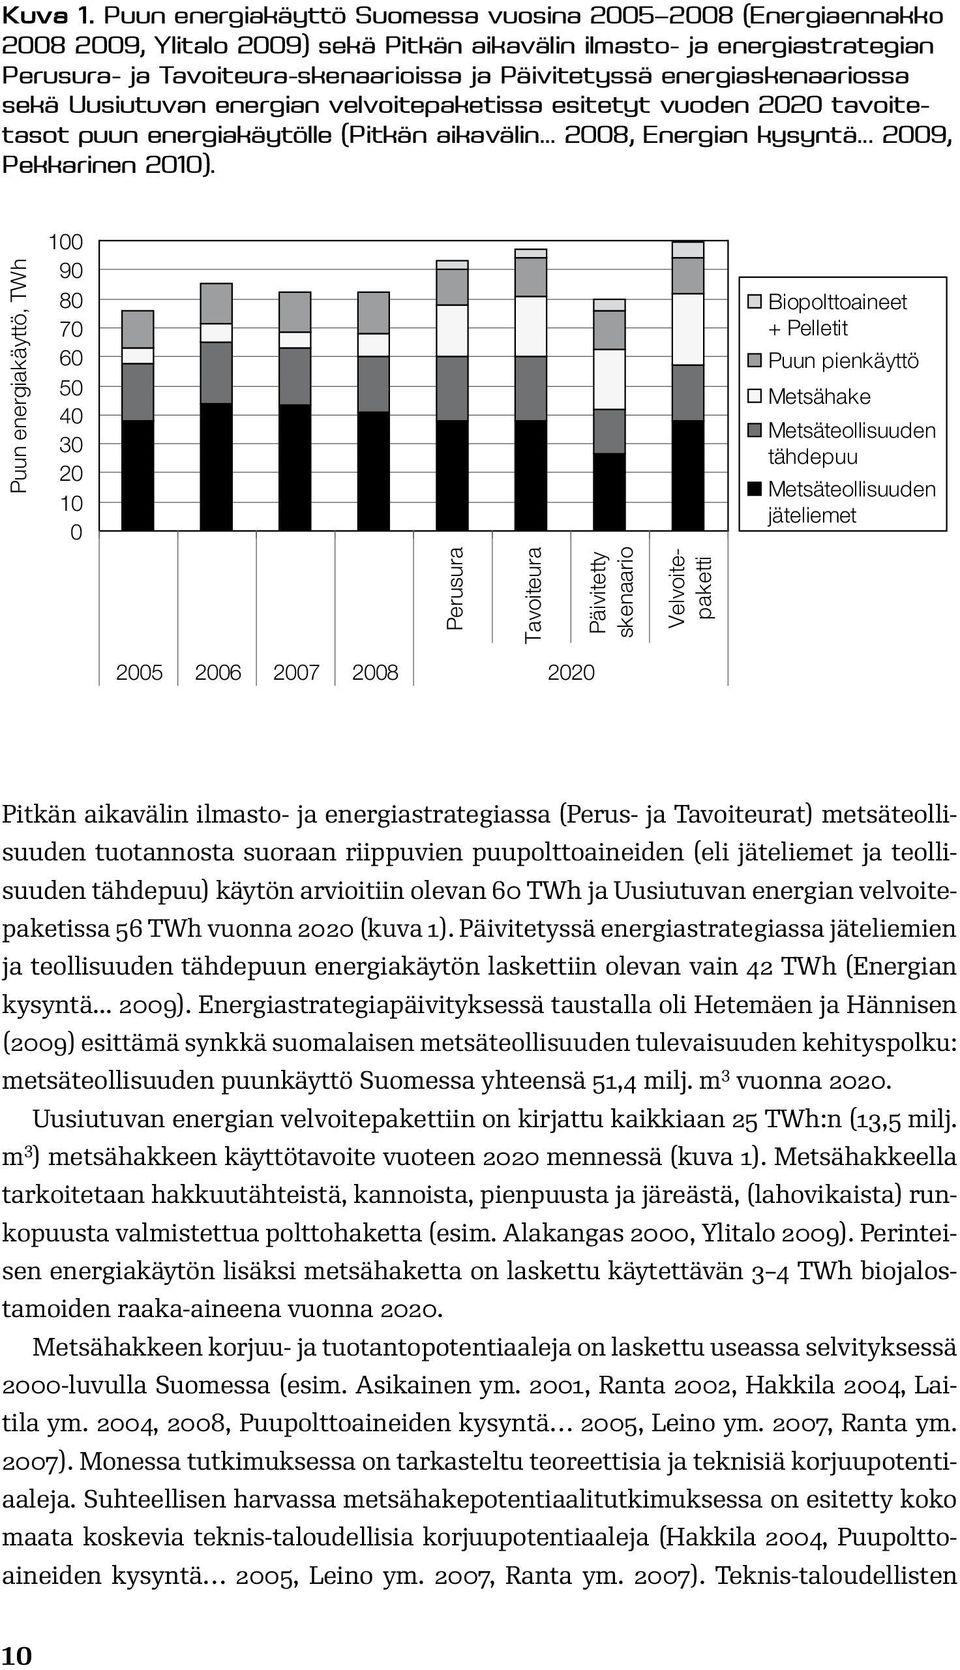 energiaskenaariossa sekä Uusiutuvan energian velvoitepaketissa esitetyt vuoden 2020 tavoitetasot puun energiakäytölle (Pitkän aikavälin 2008, Energian kysyntä... 2009, Pekkarinen 2010).